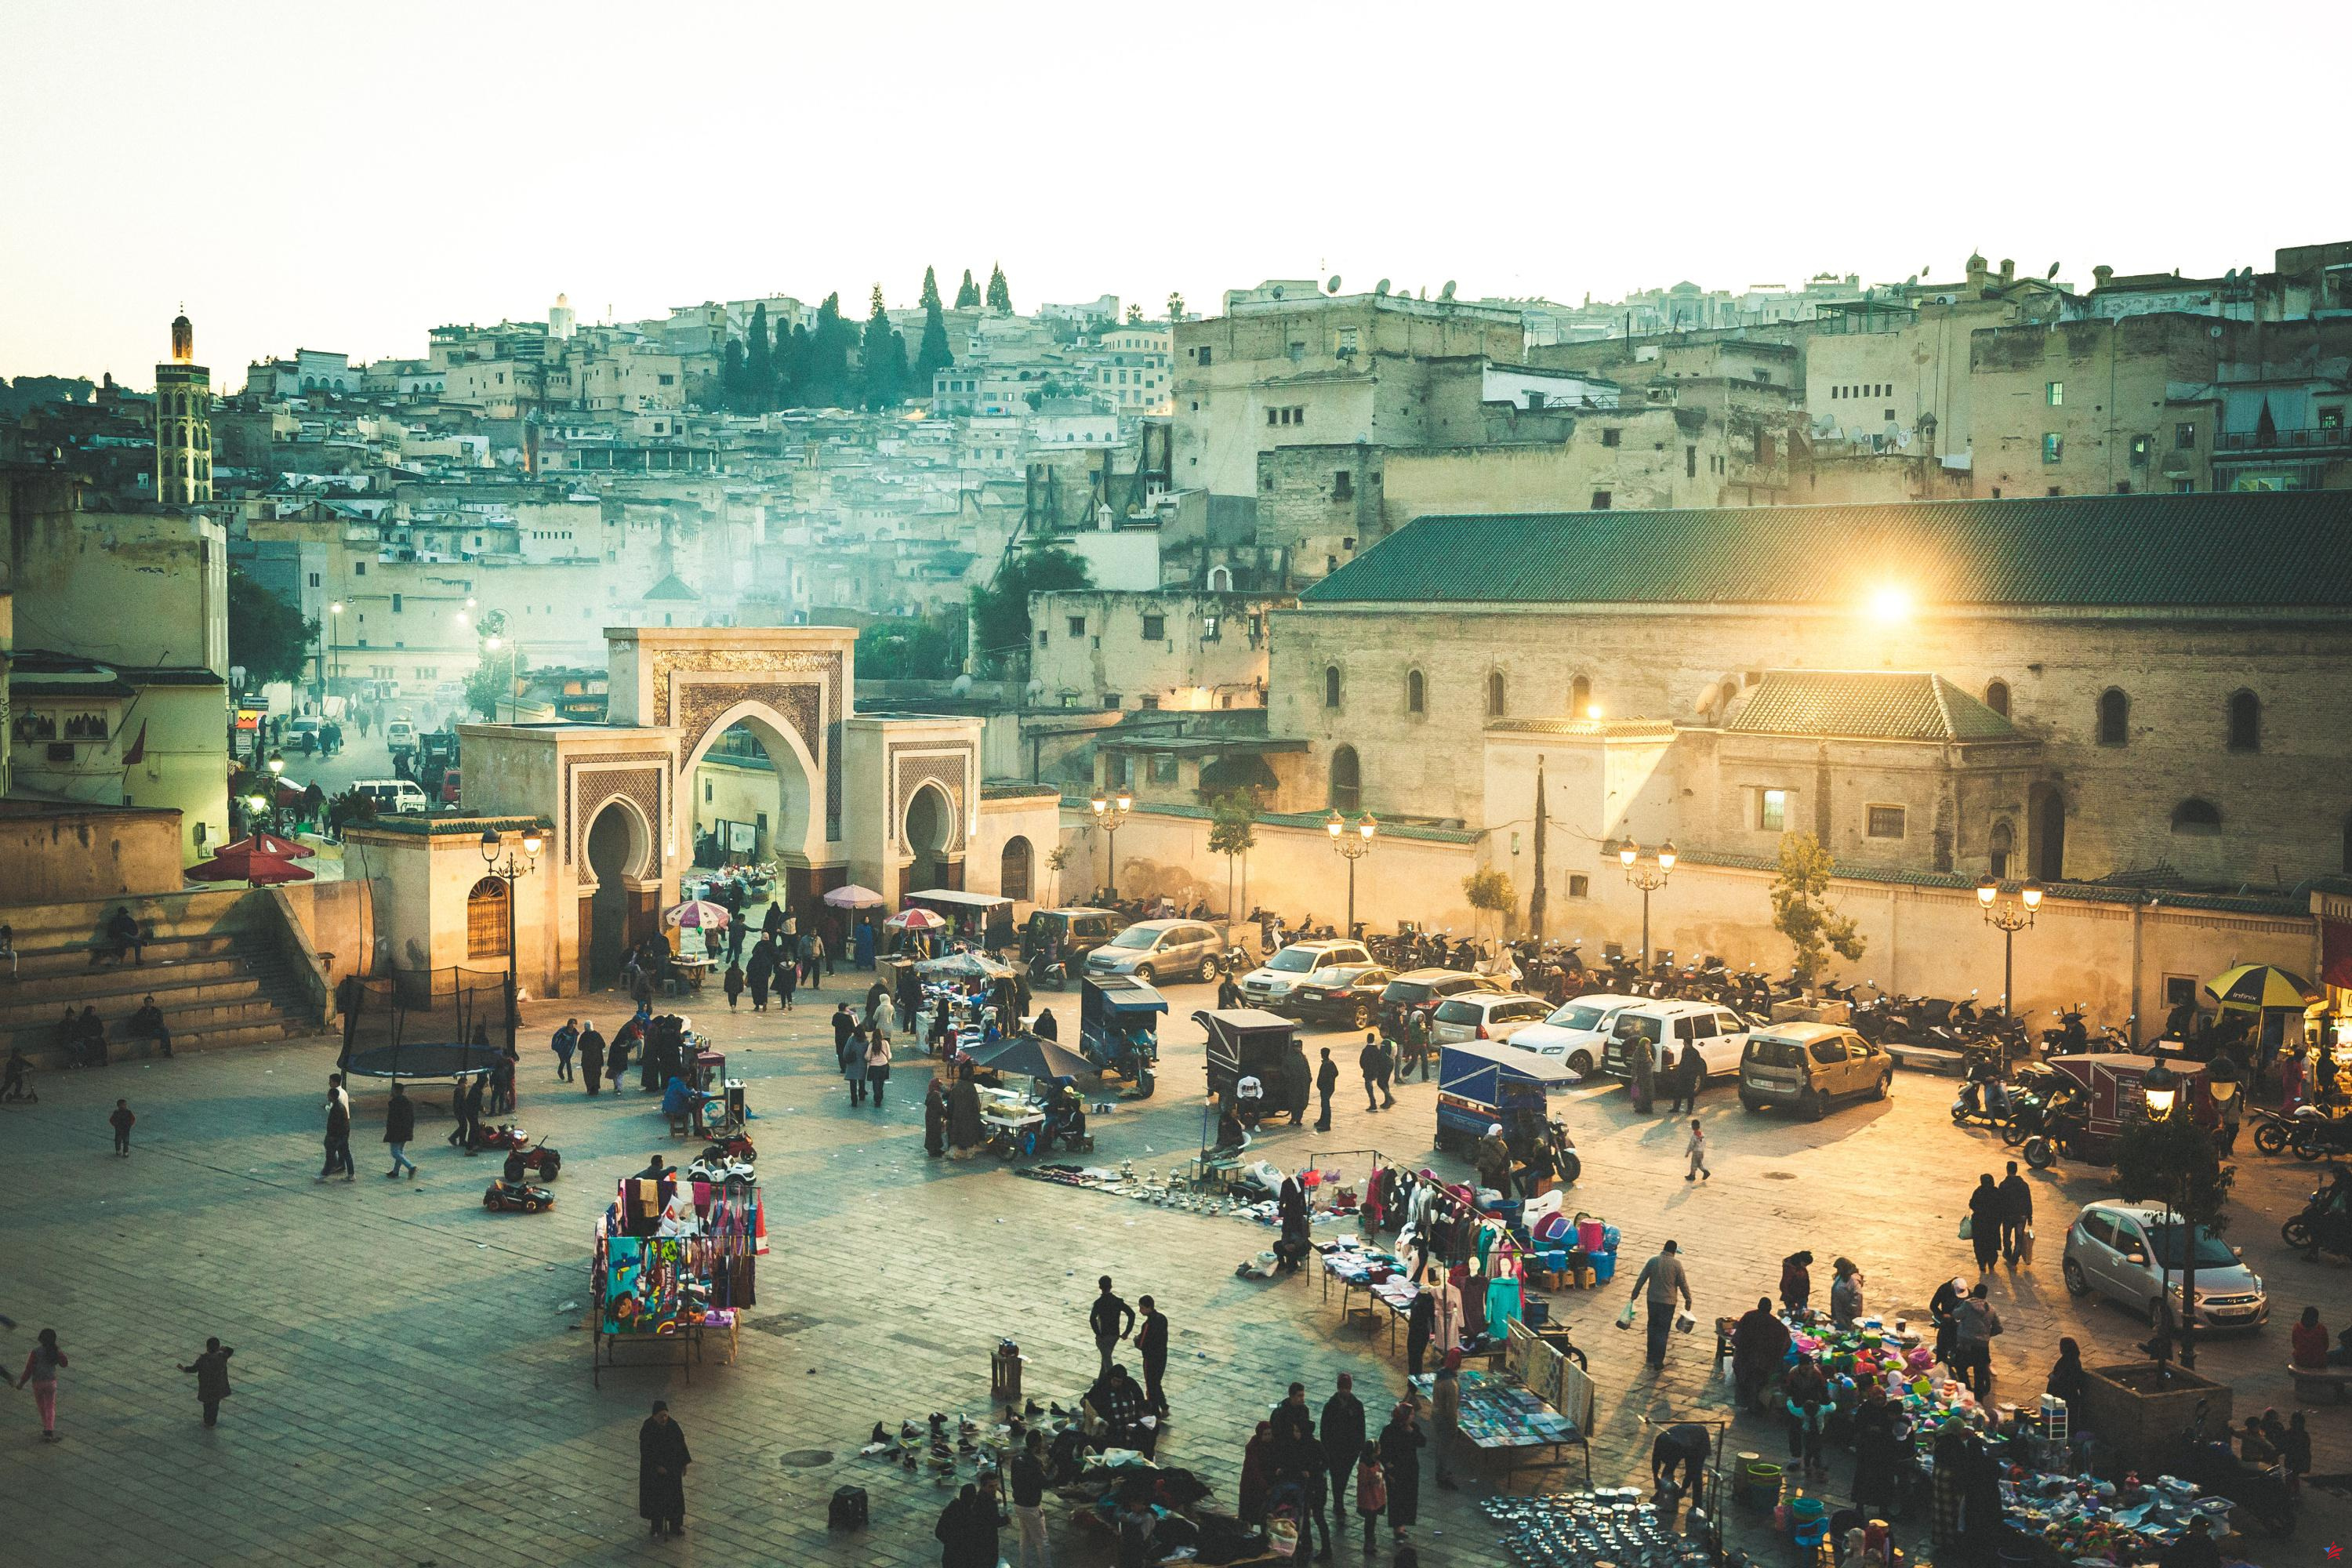 Dónde dormir, qué ver, qué restaurante elegir... Nuestras mejores direcciones en Fez, la capital espiritual de Marruecos